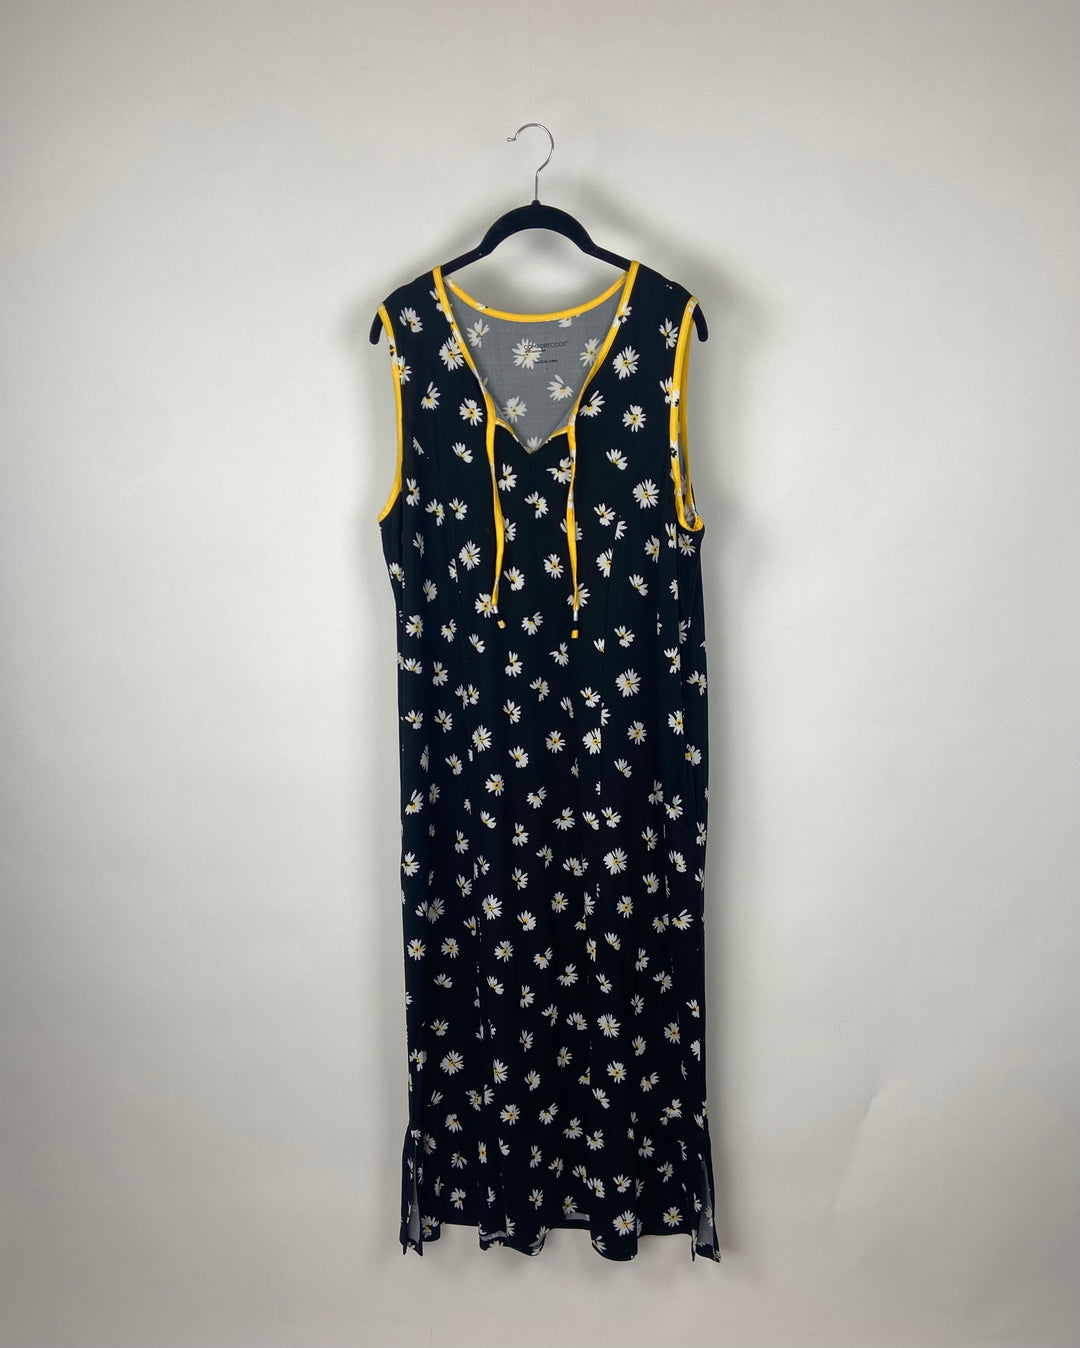 Black Daisy Dress - Size 6/8 & 14/16W